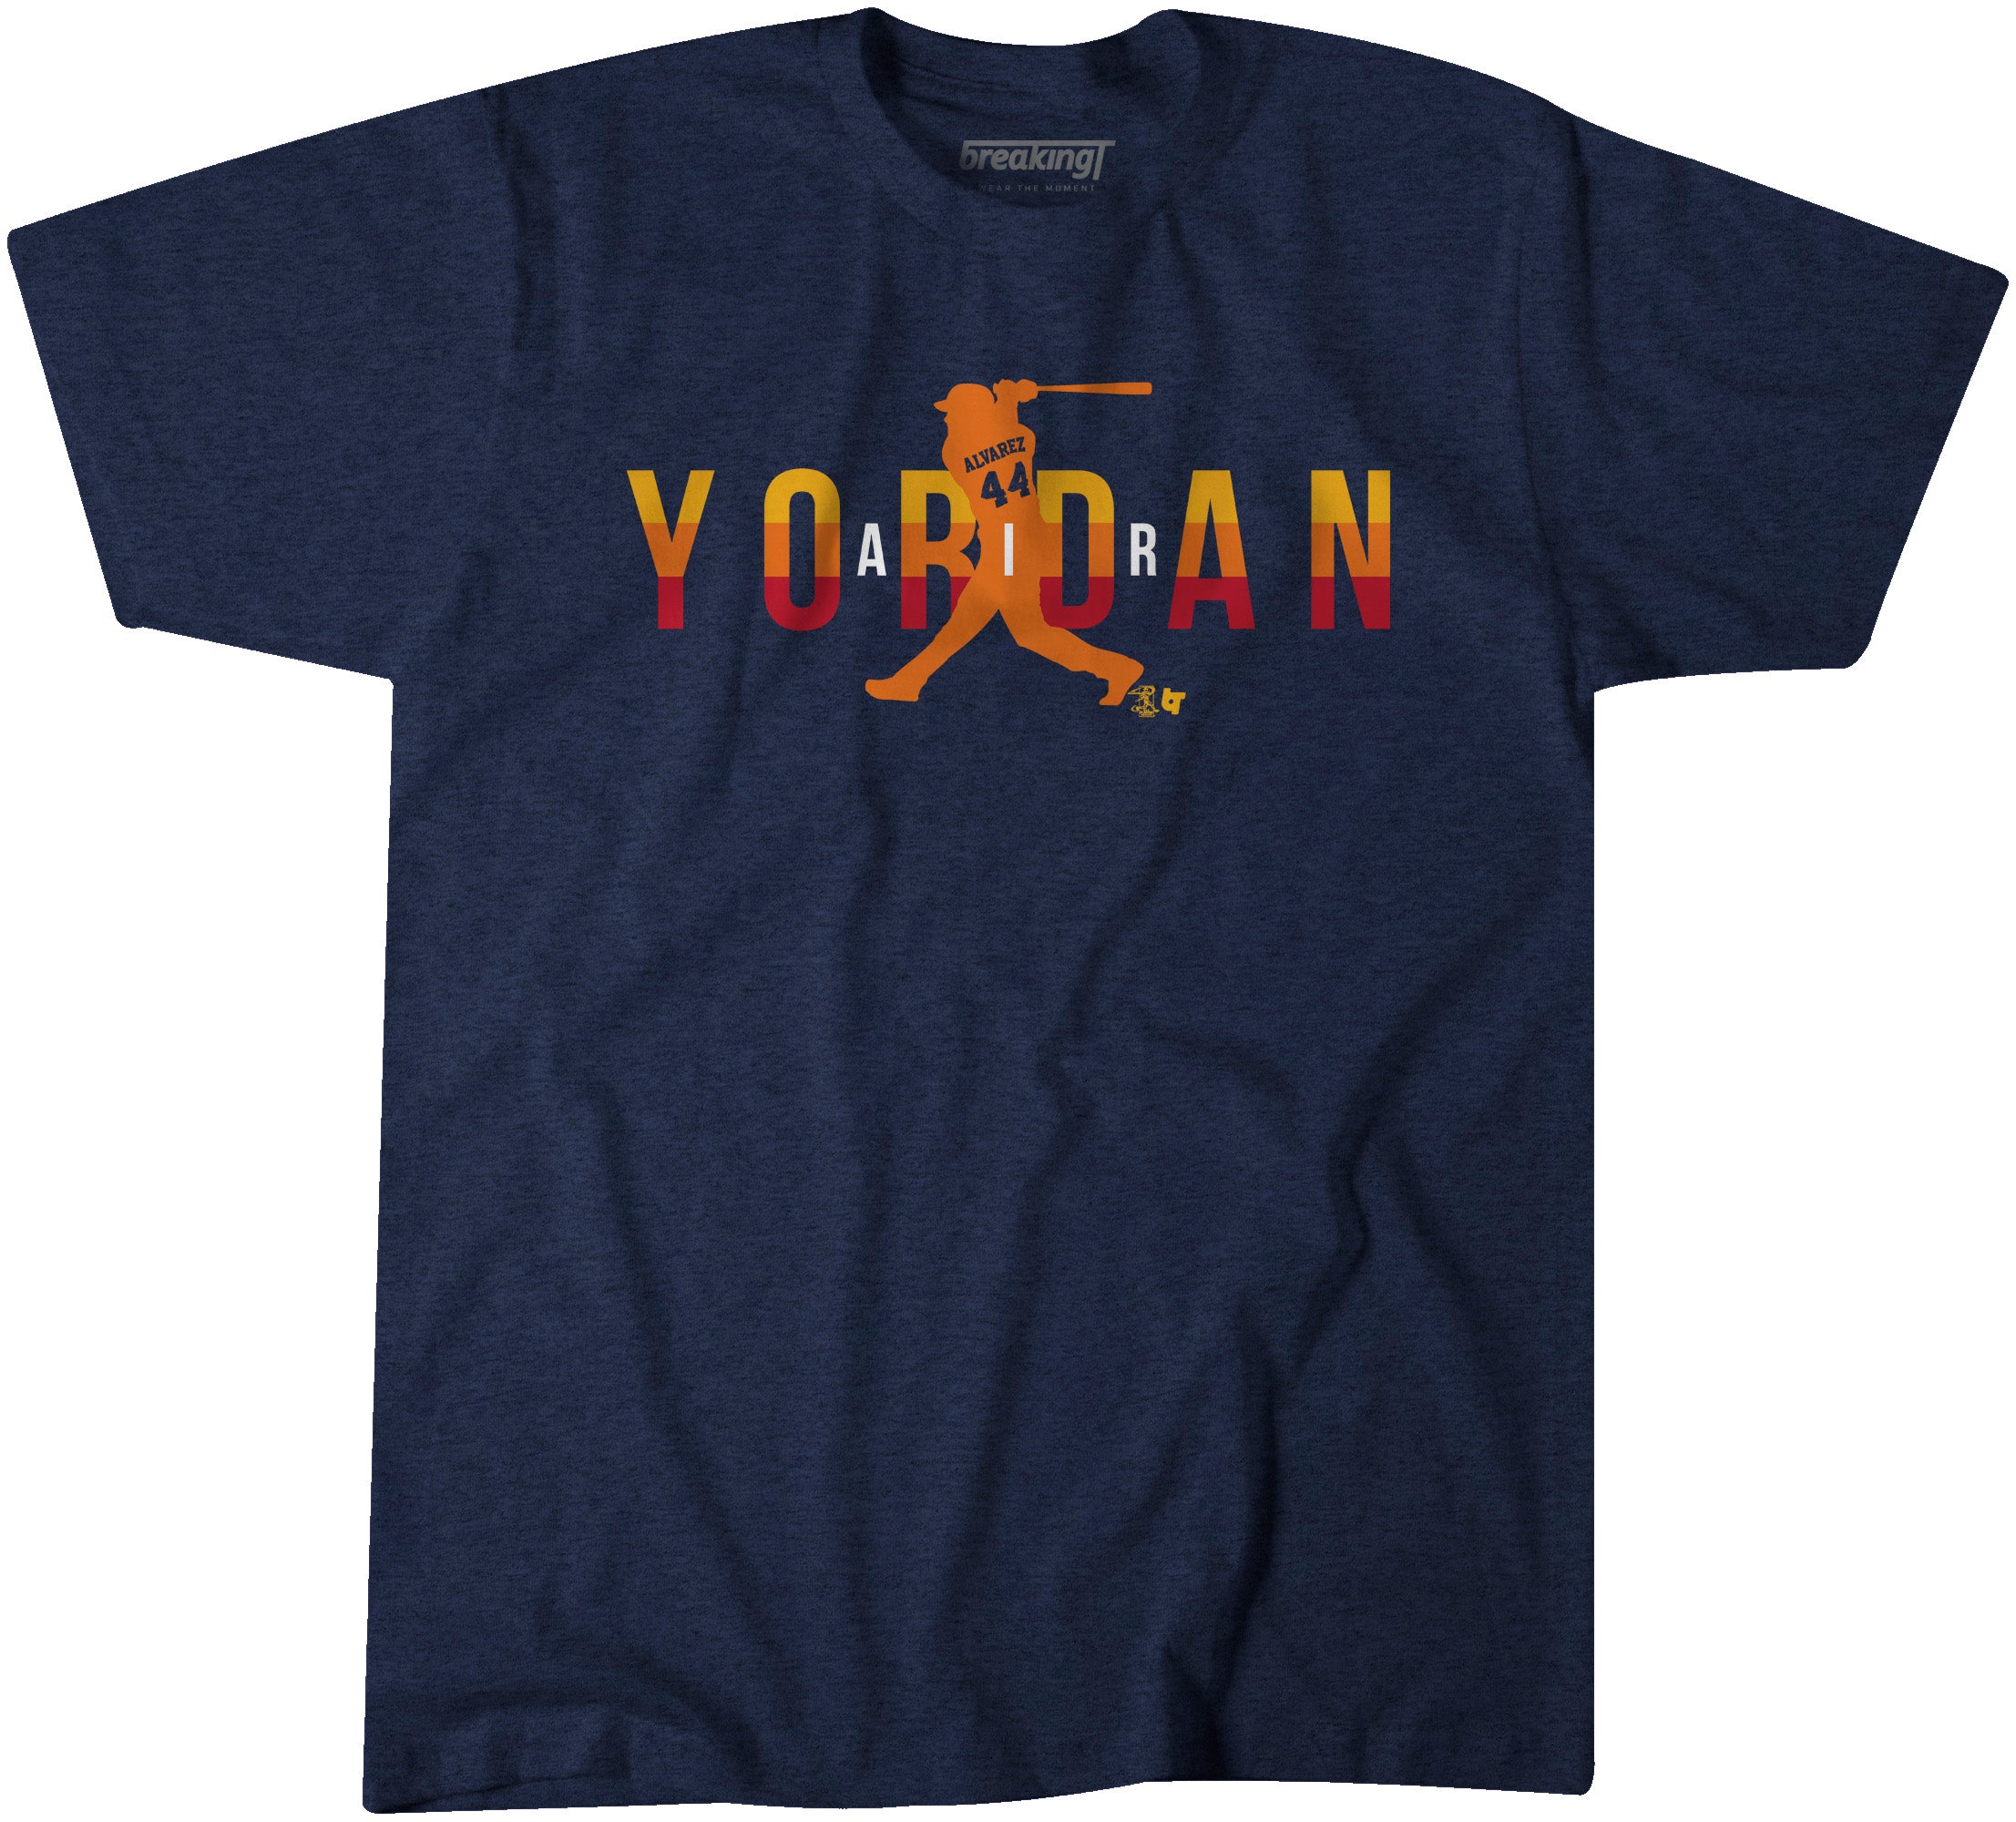 Yordan Alvarez Shirt - Air Yordan Swing, Houston, MLBPA - BreakingT